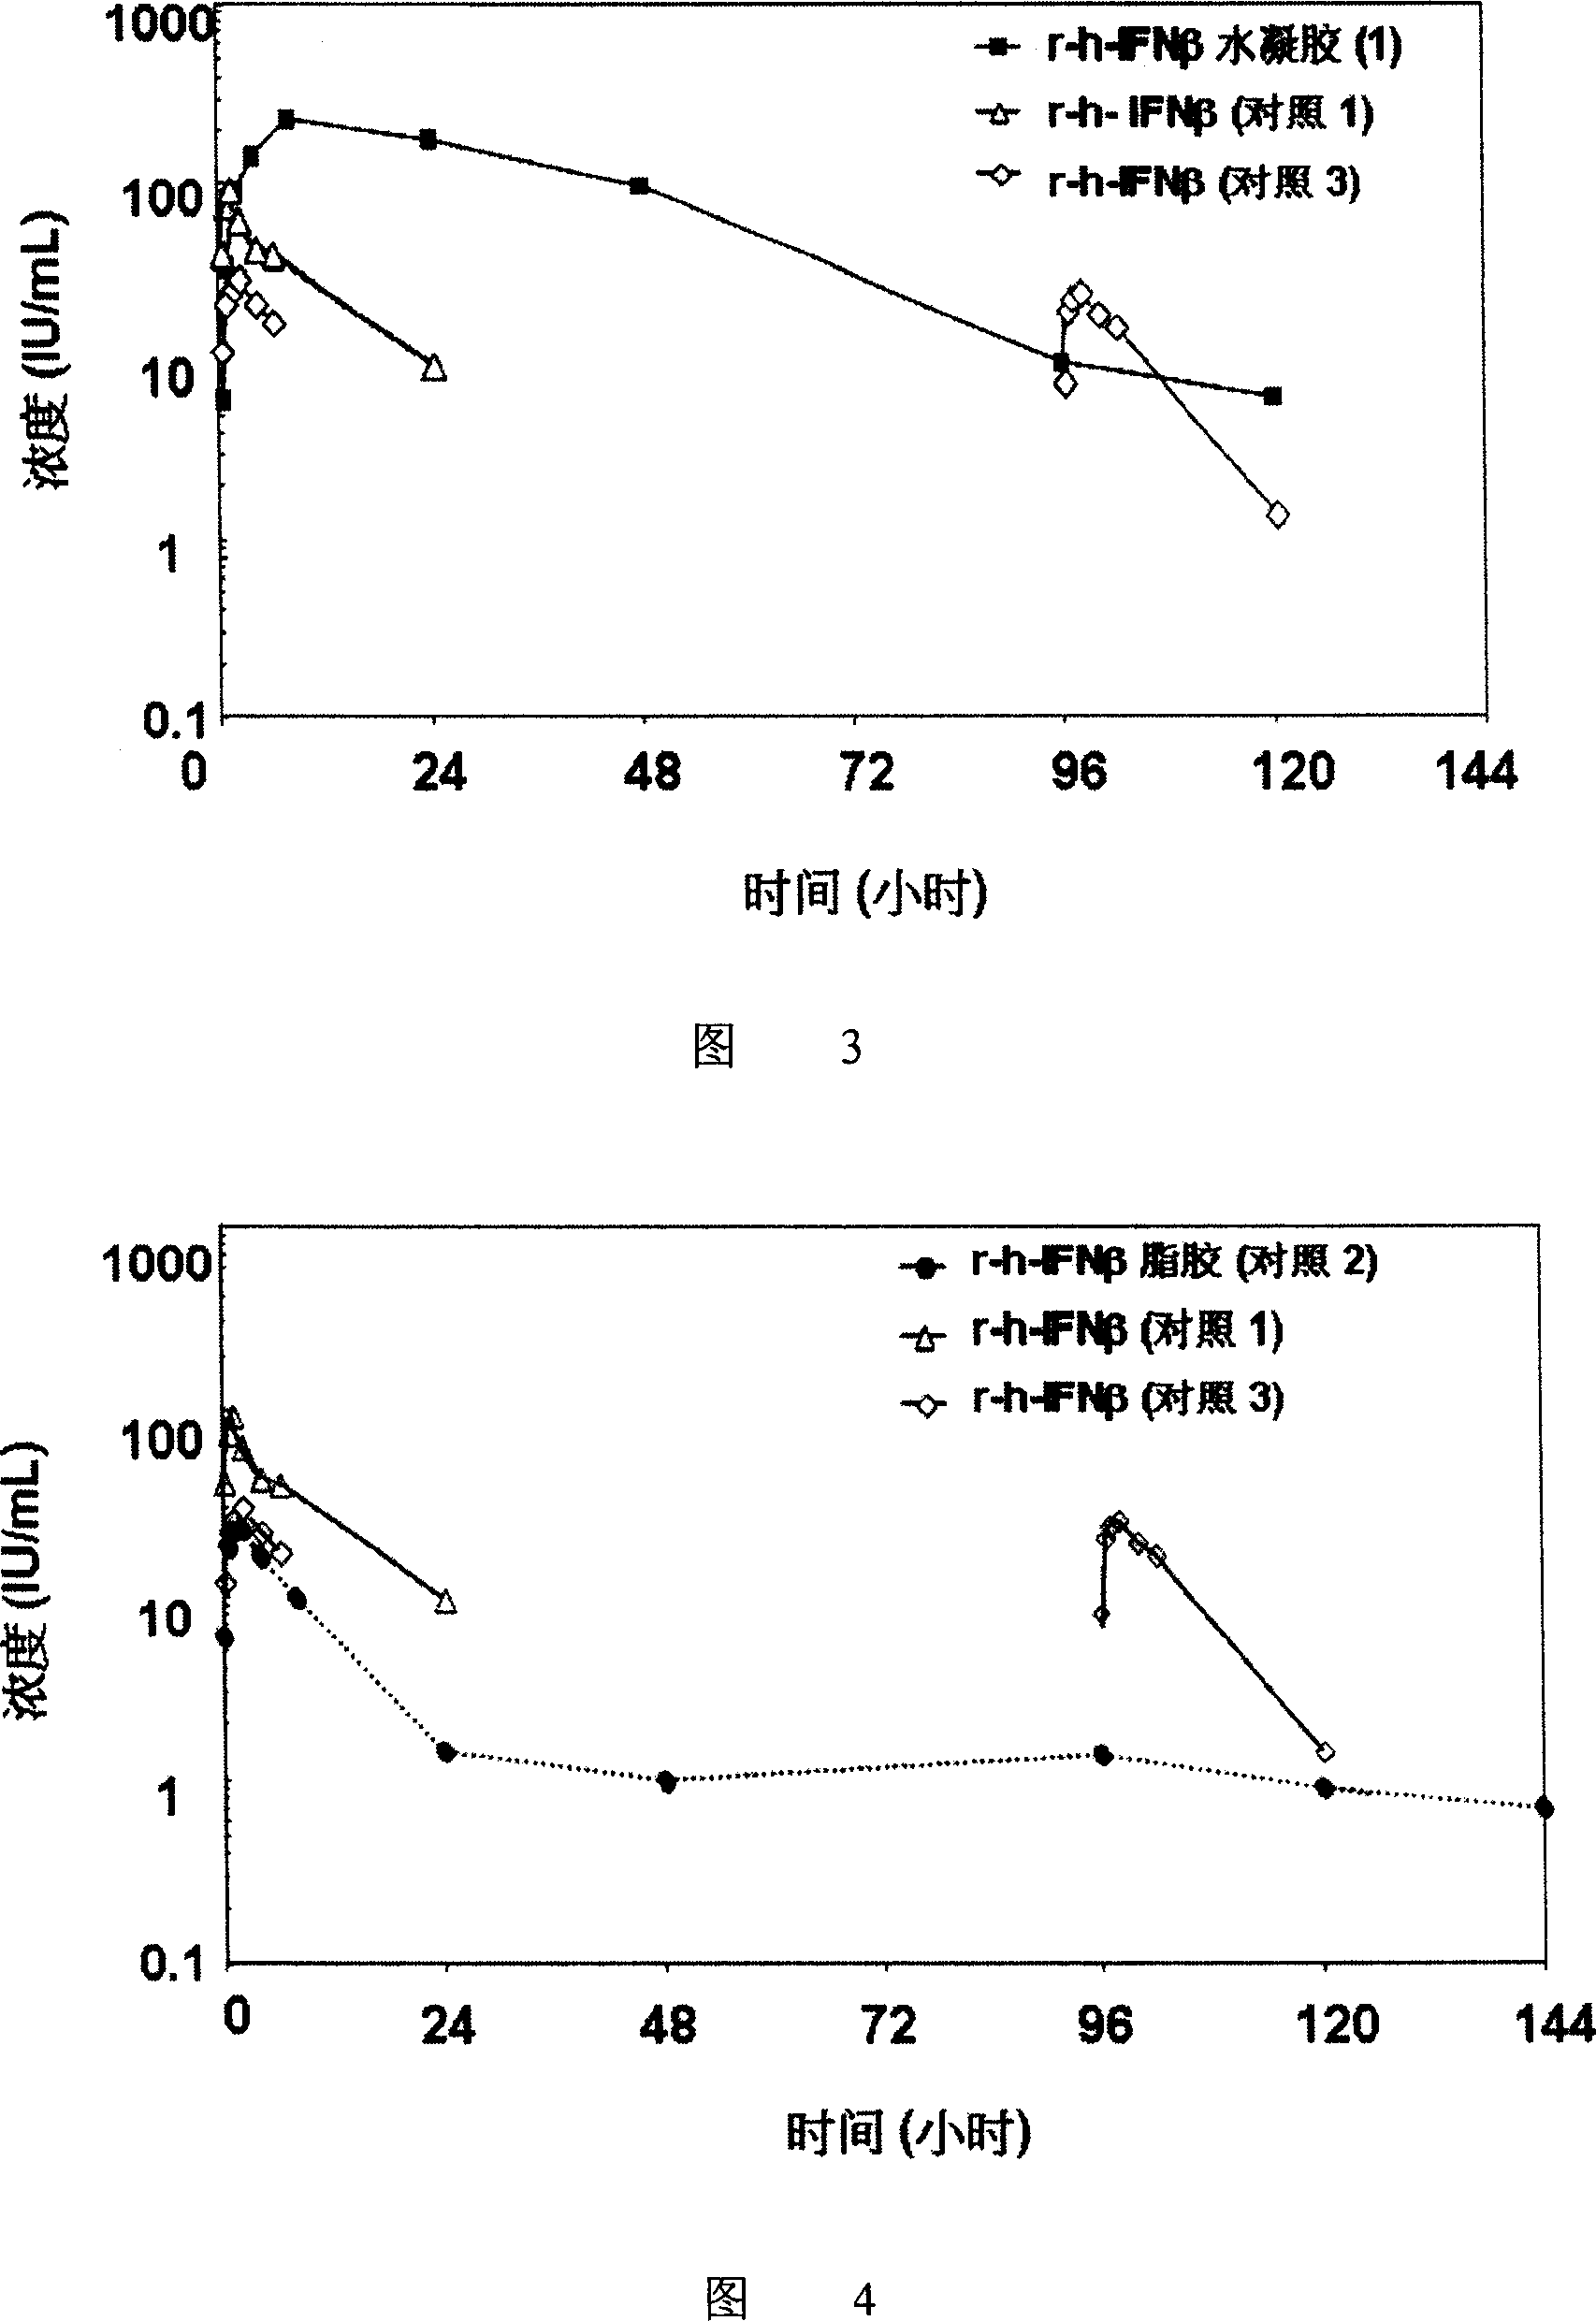 Hydrogel interferon formulations